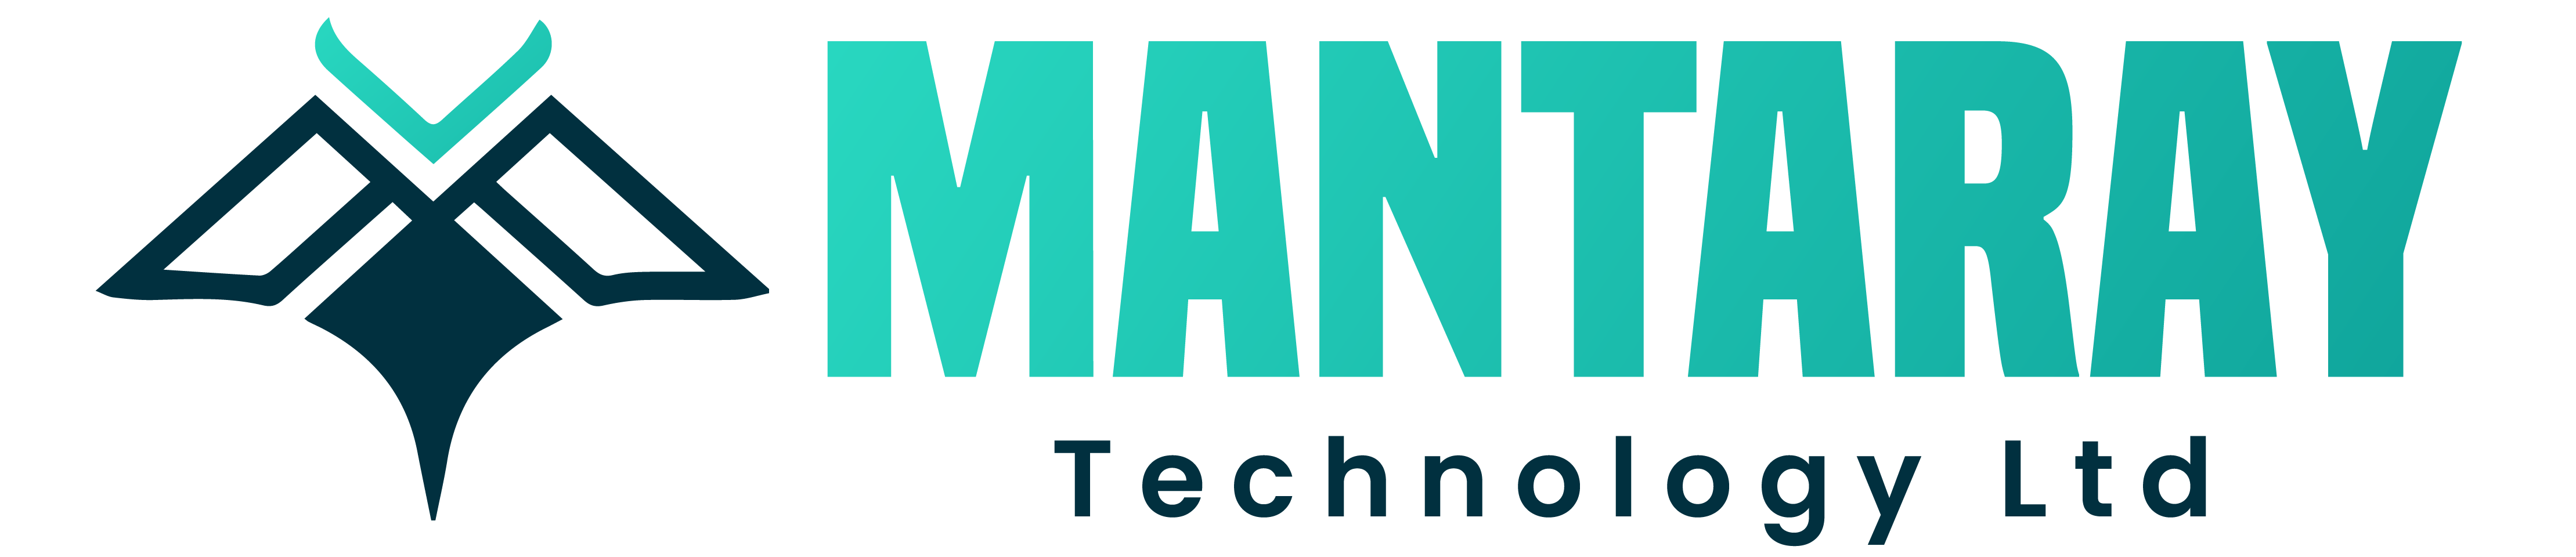 Mantaray Technology